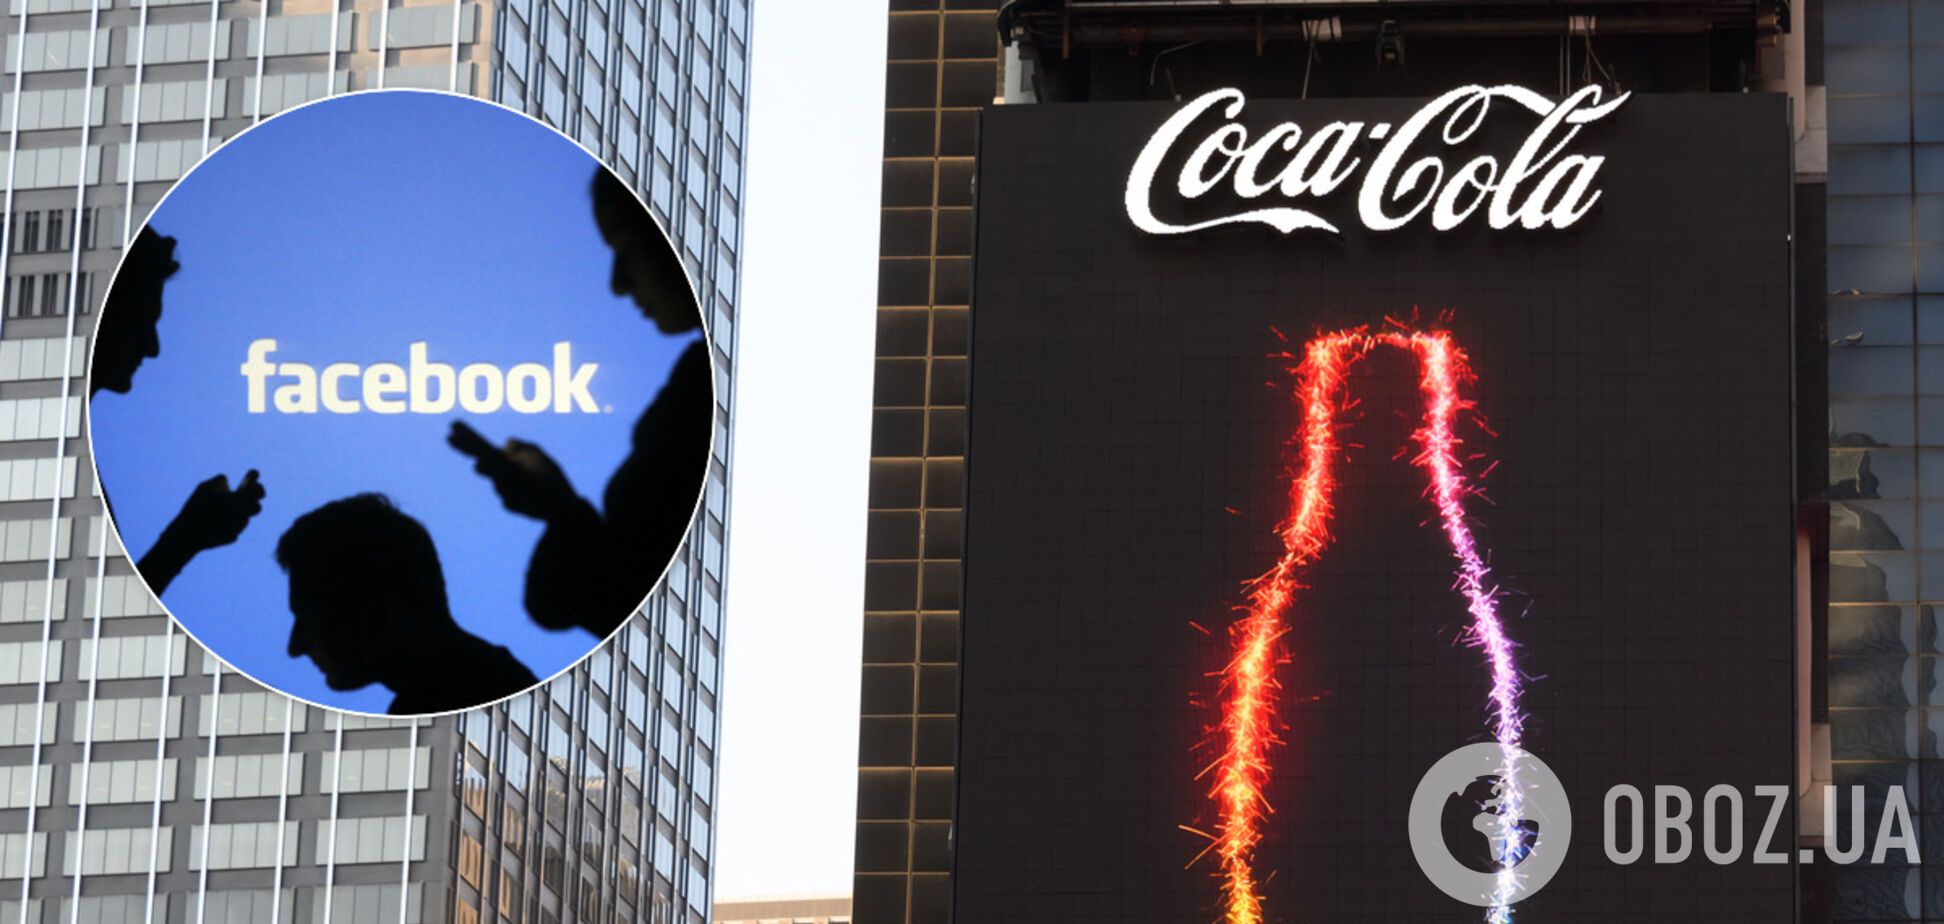 Coca Cola бойкотирует Facebook